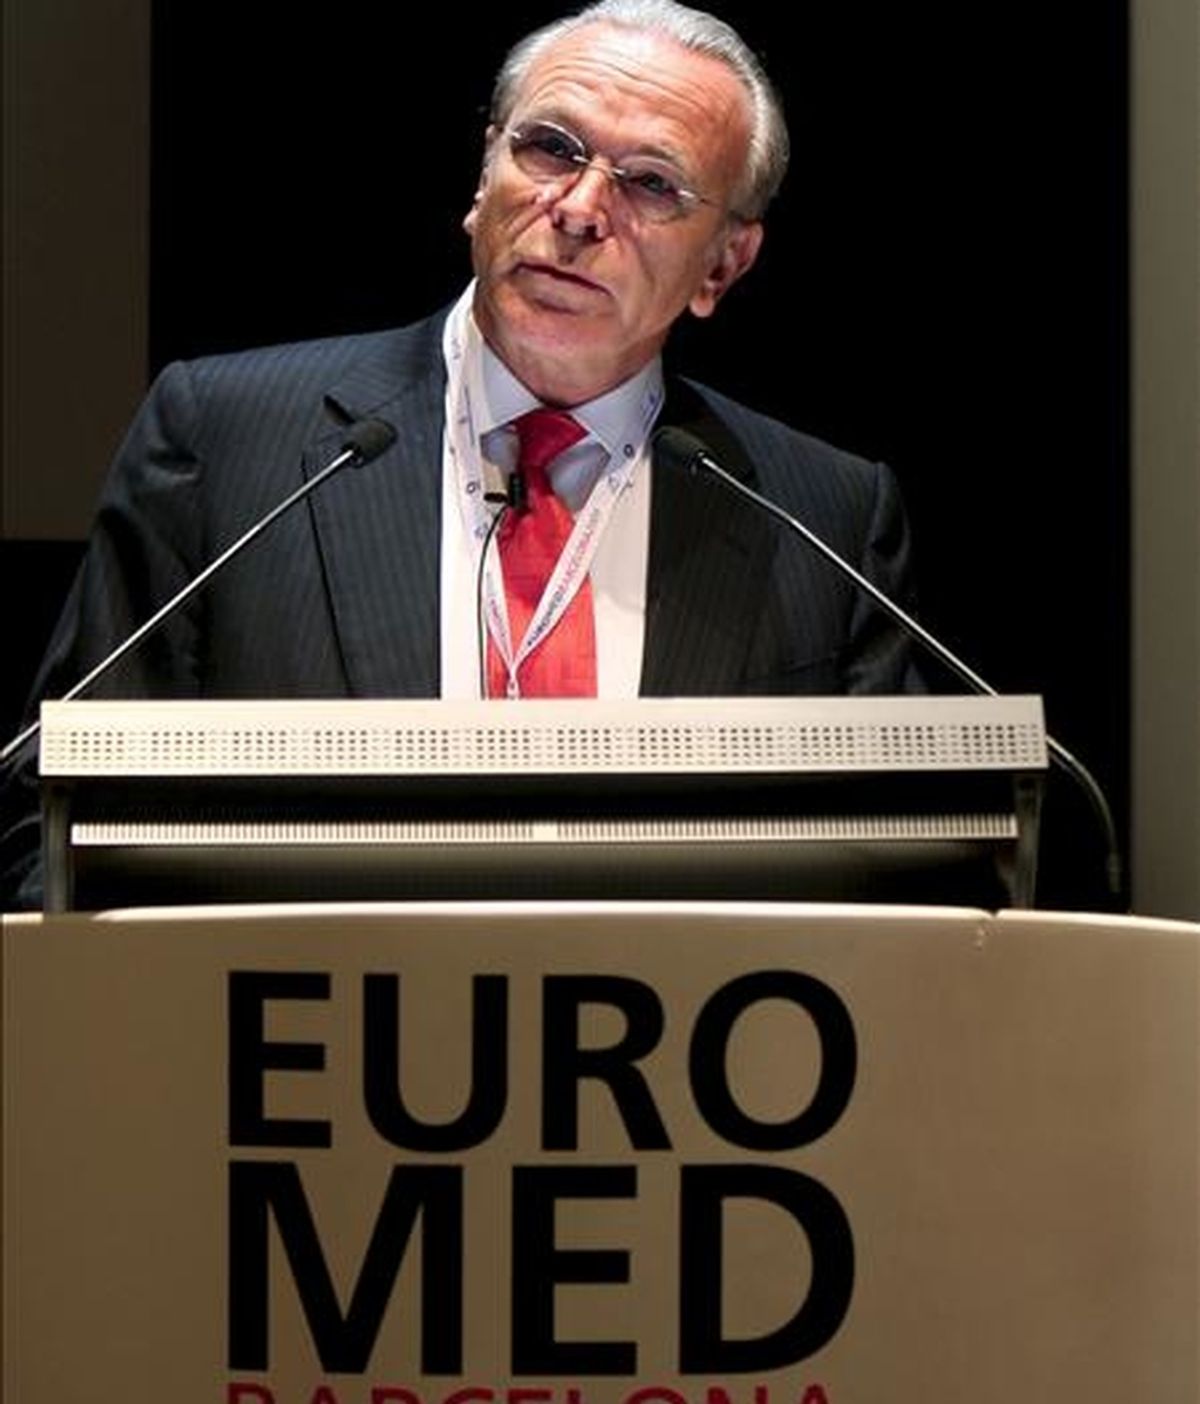 El presidente de La Caixa, Isidro Fainé, durante su intervención en la Conferencia Euromed, la cumbre de las cajas de ahorros del área euromediterránea, hoy en Barcelona. EFE